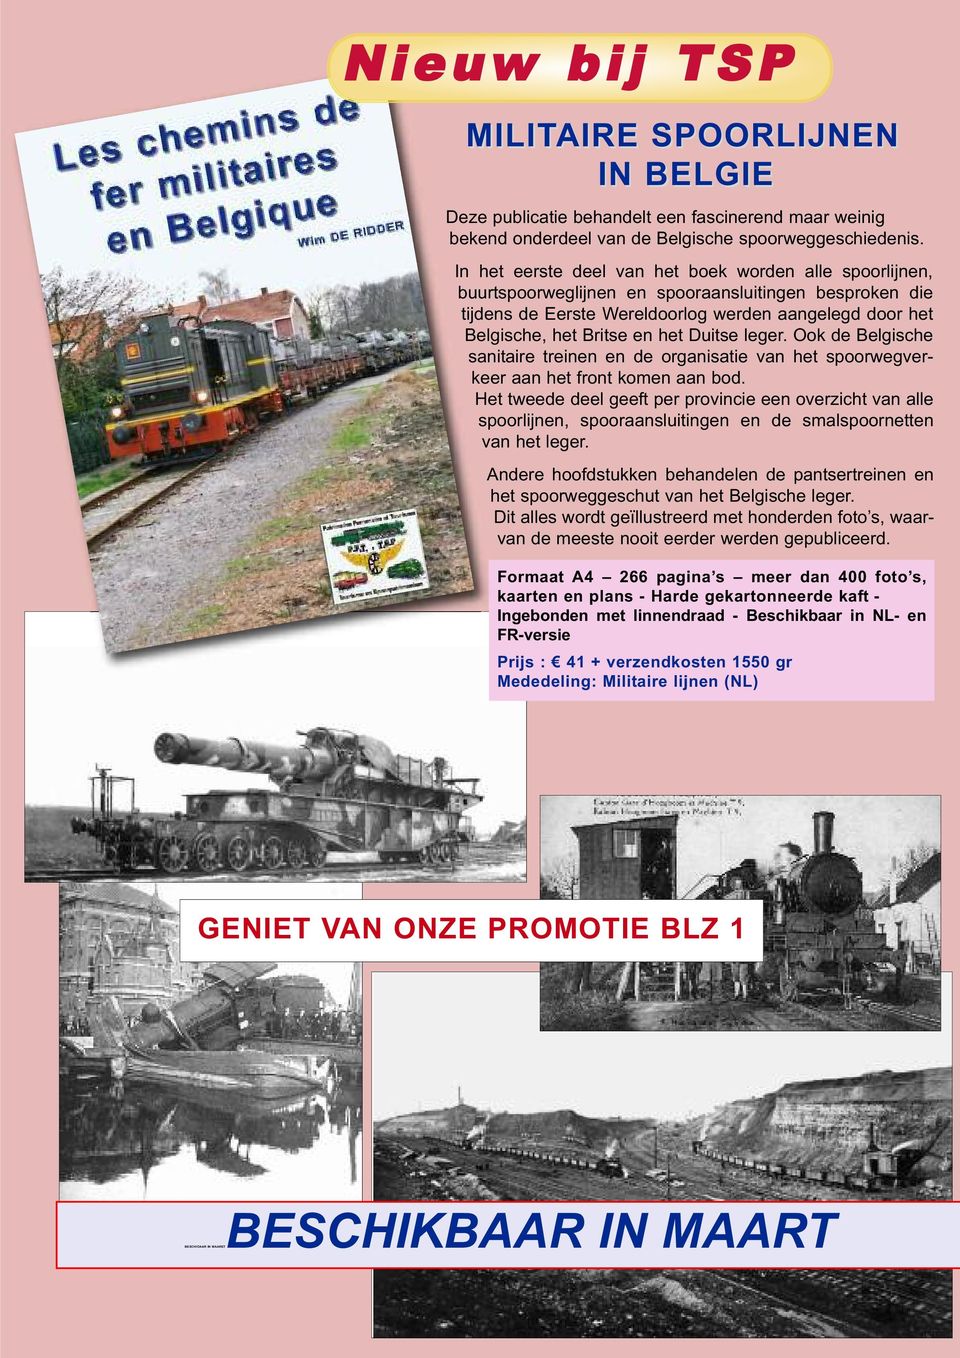 Duitse leger. Ook de Belgische sanitaire treinen en de organisatie van het spoorwegverkeer aan het front komen aan bod.